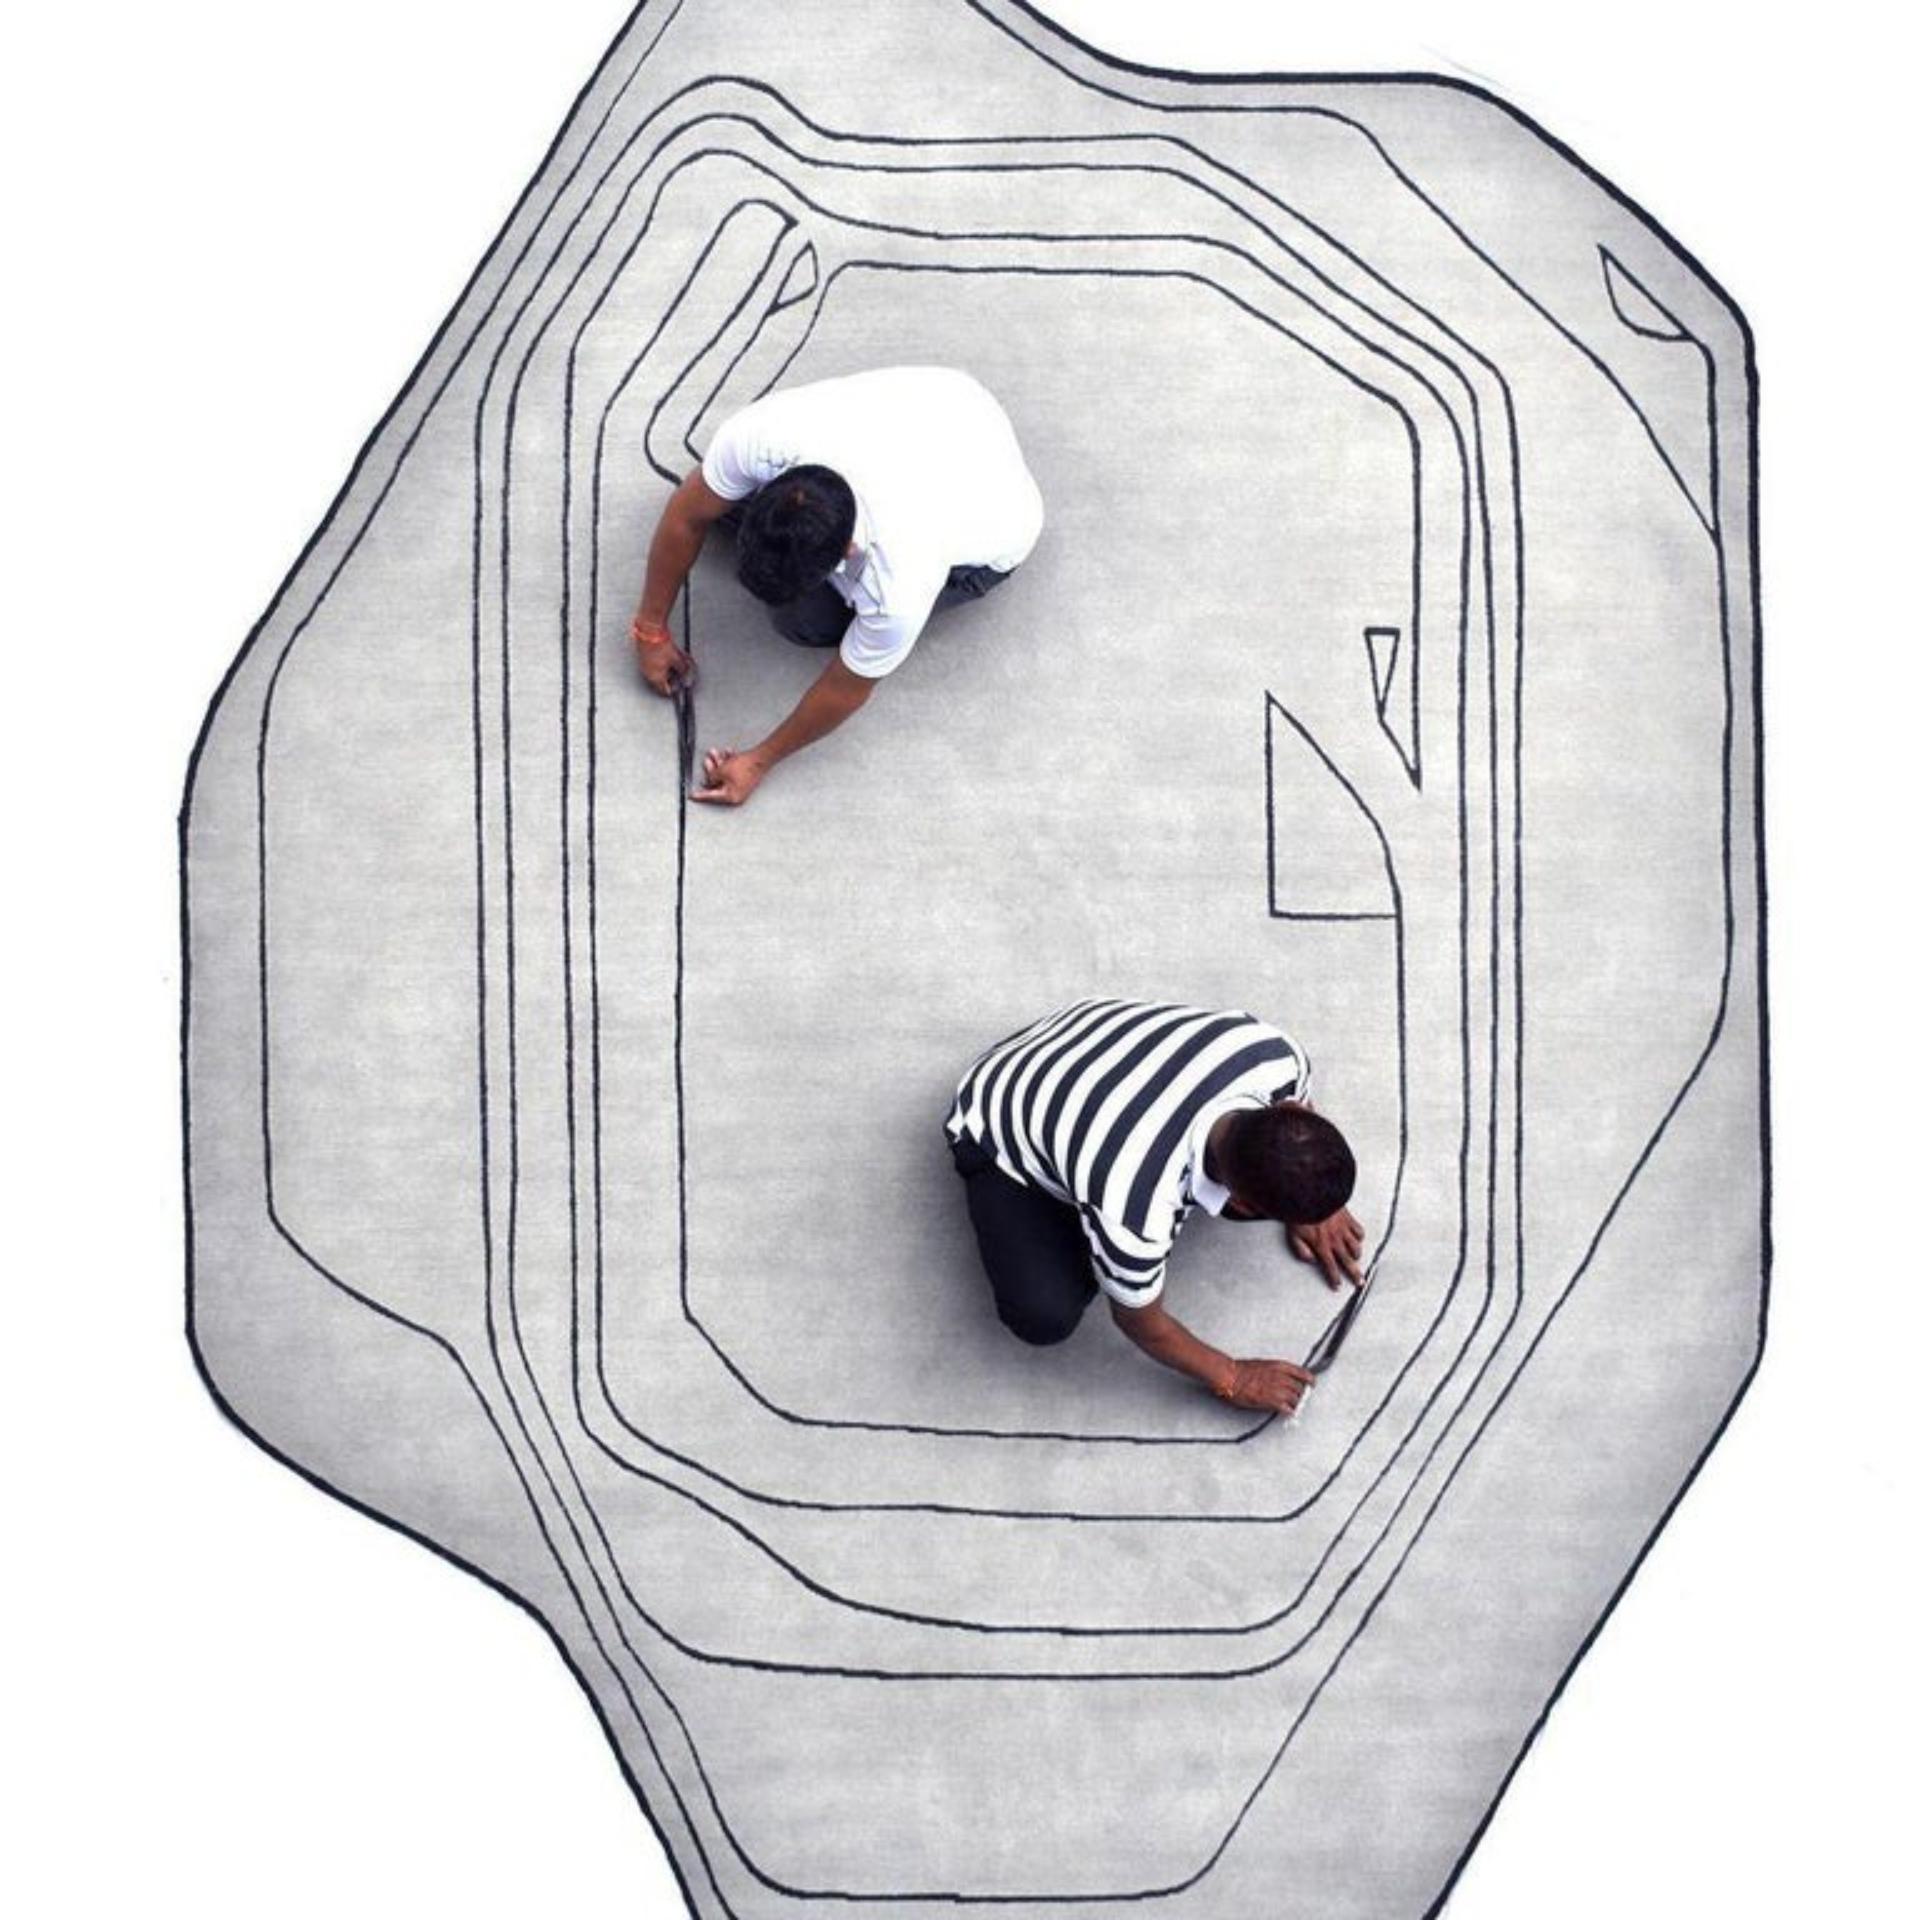 Petit tapis Platelets d'Art & Loom
Dimensions : D 243,4 x H 304,8 cm
Matériaux : Laine de Nouvelle-Zélande & soie de Chine
Qualité (nœuds par pouce) : 80
Disponible également en différentes dimensions.

Samantha Gallacher a toujours eu un sens